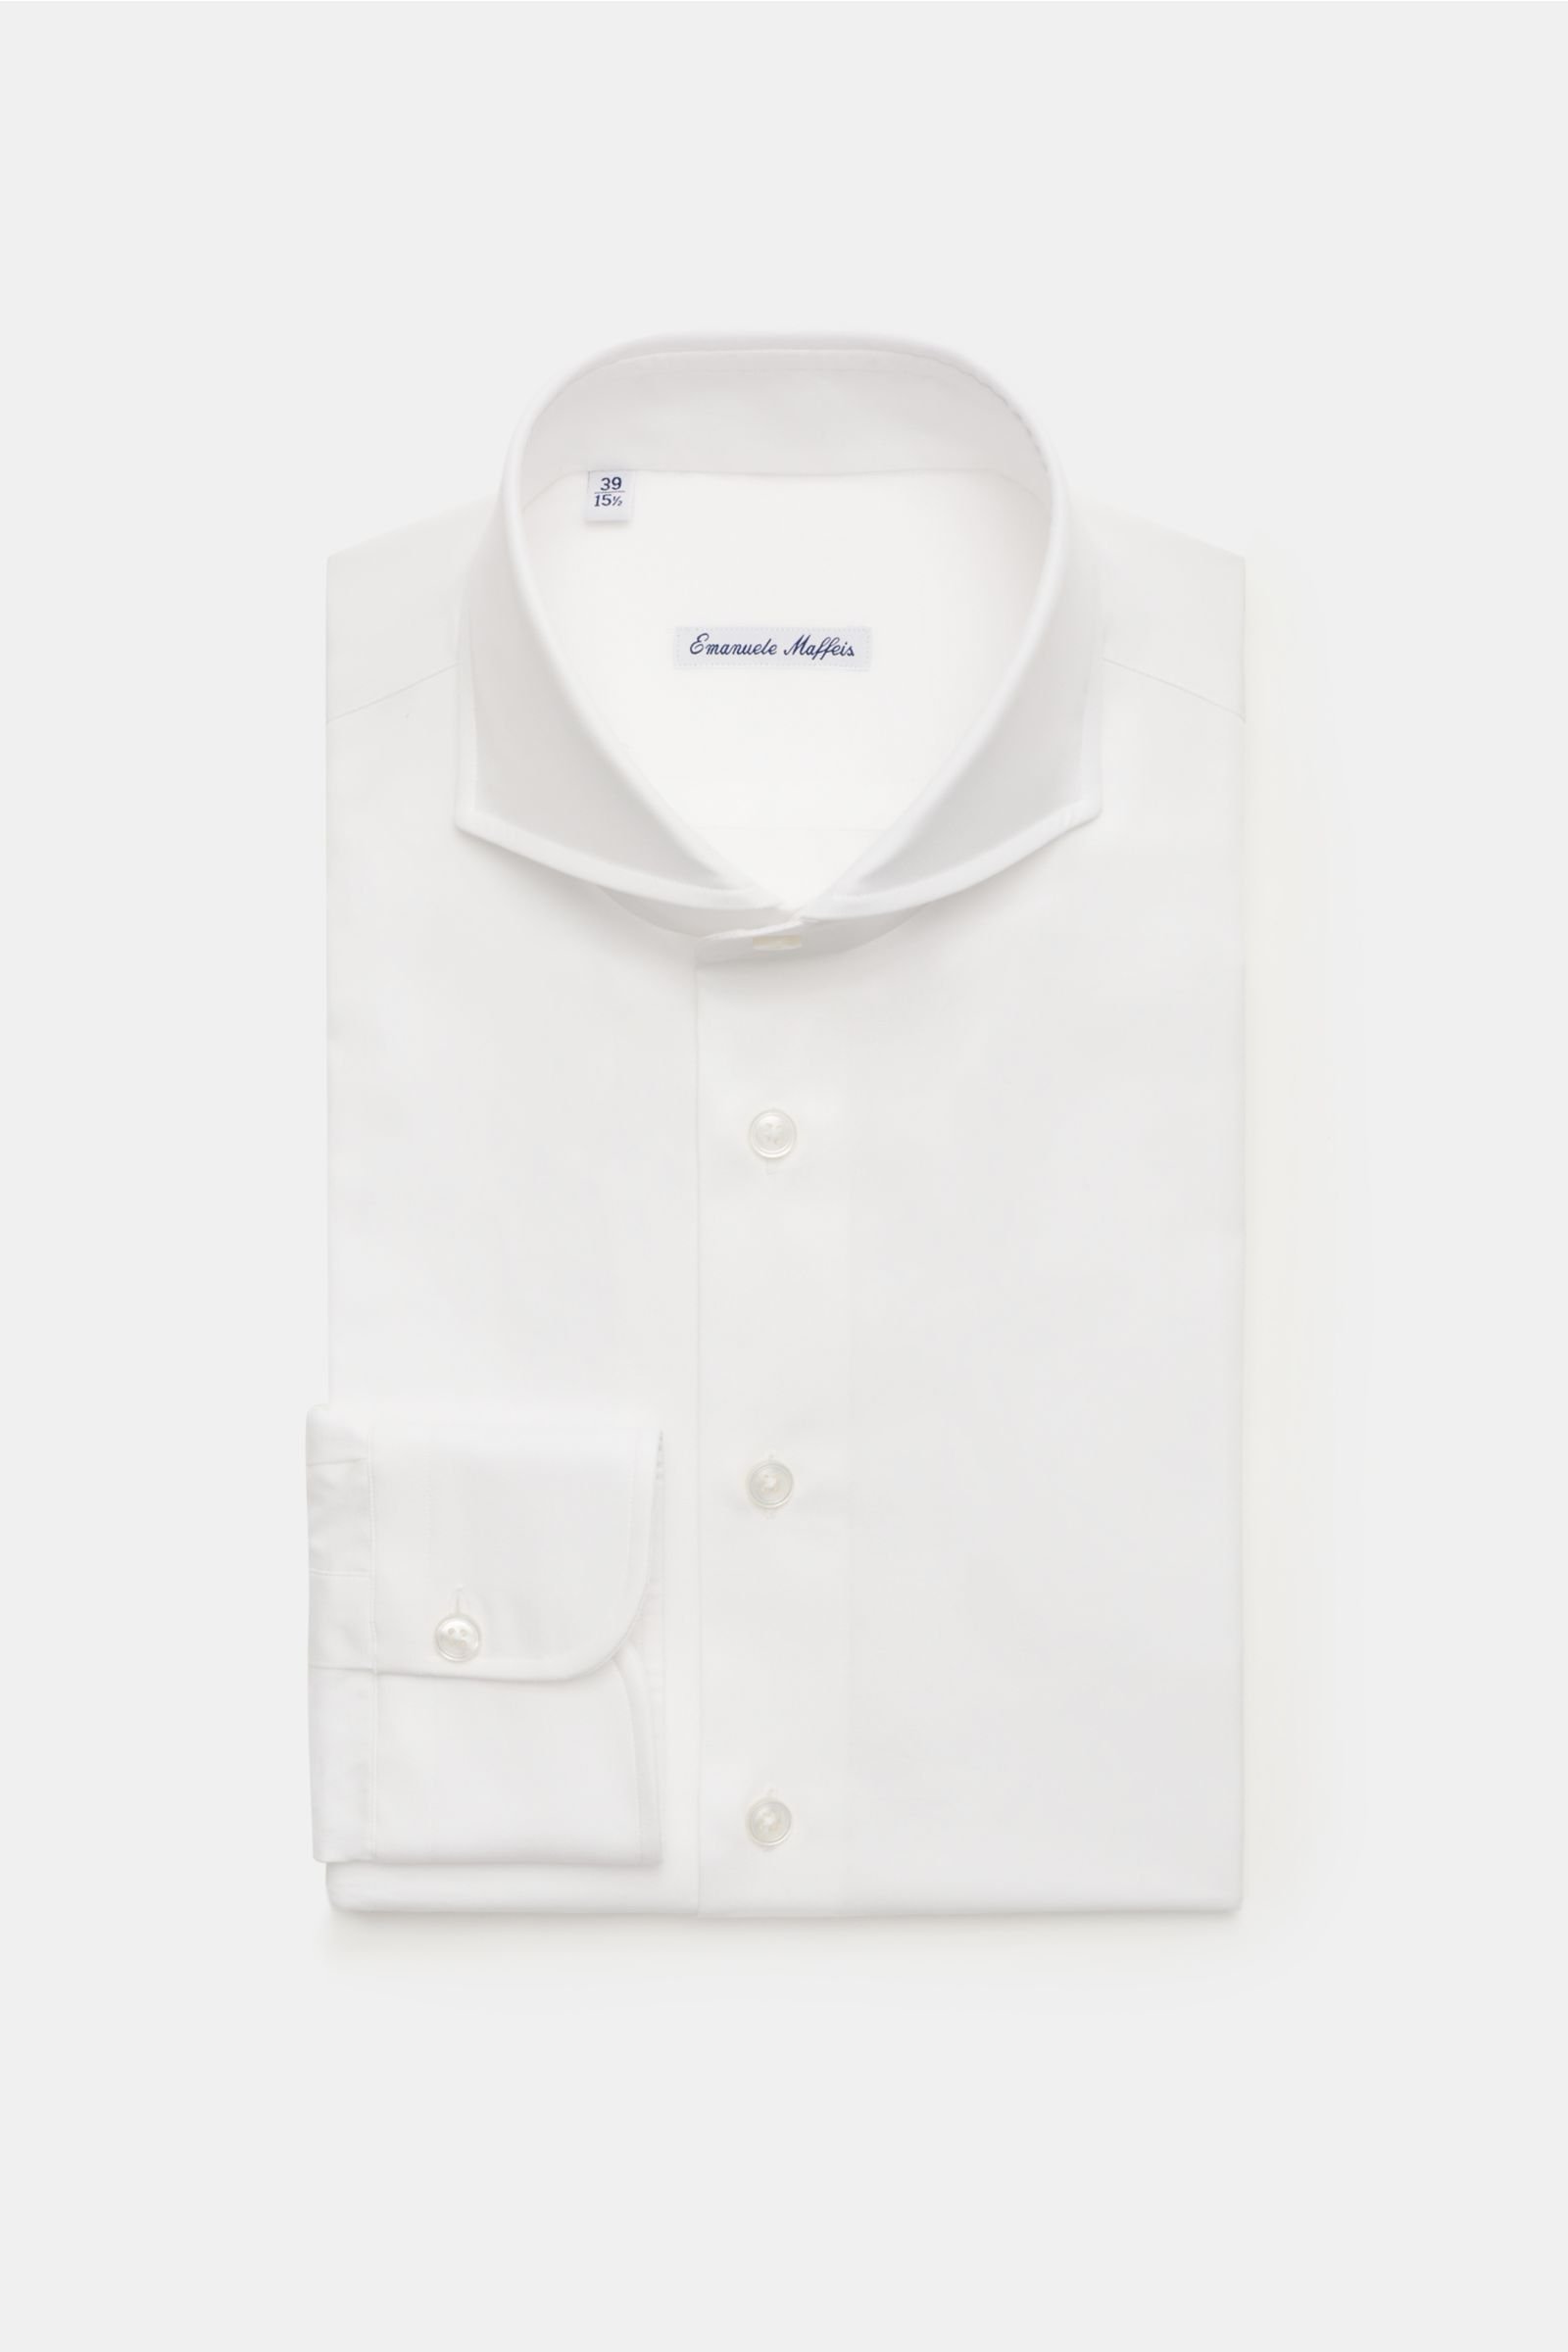 Business shirt 'Loano' shark collar white